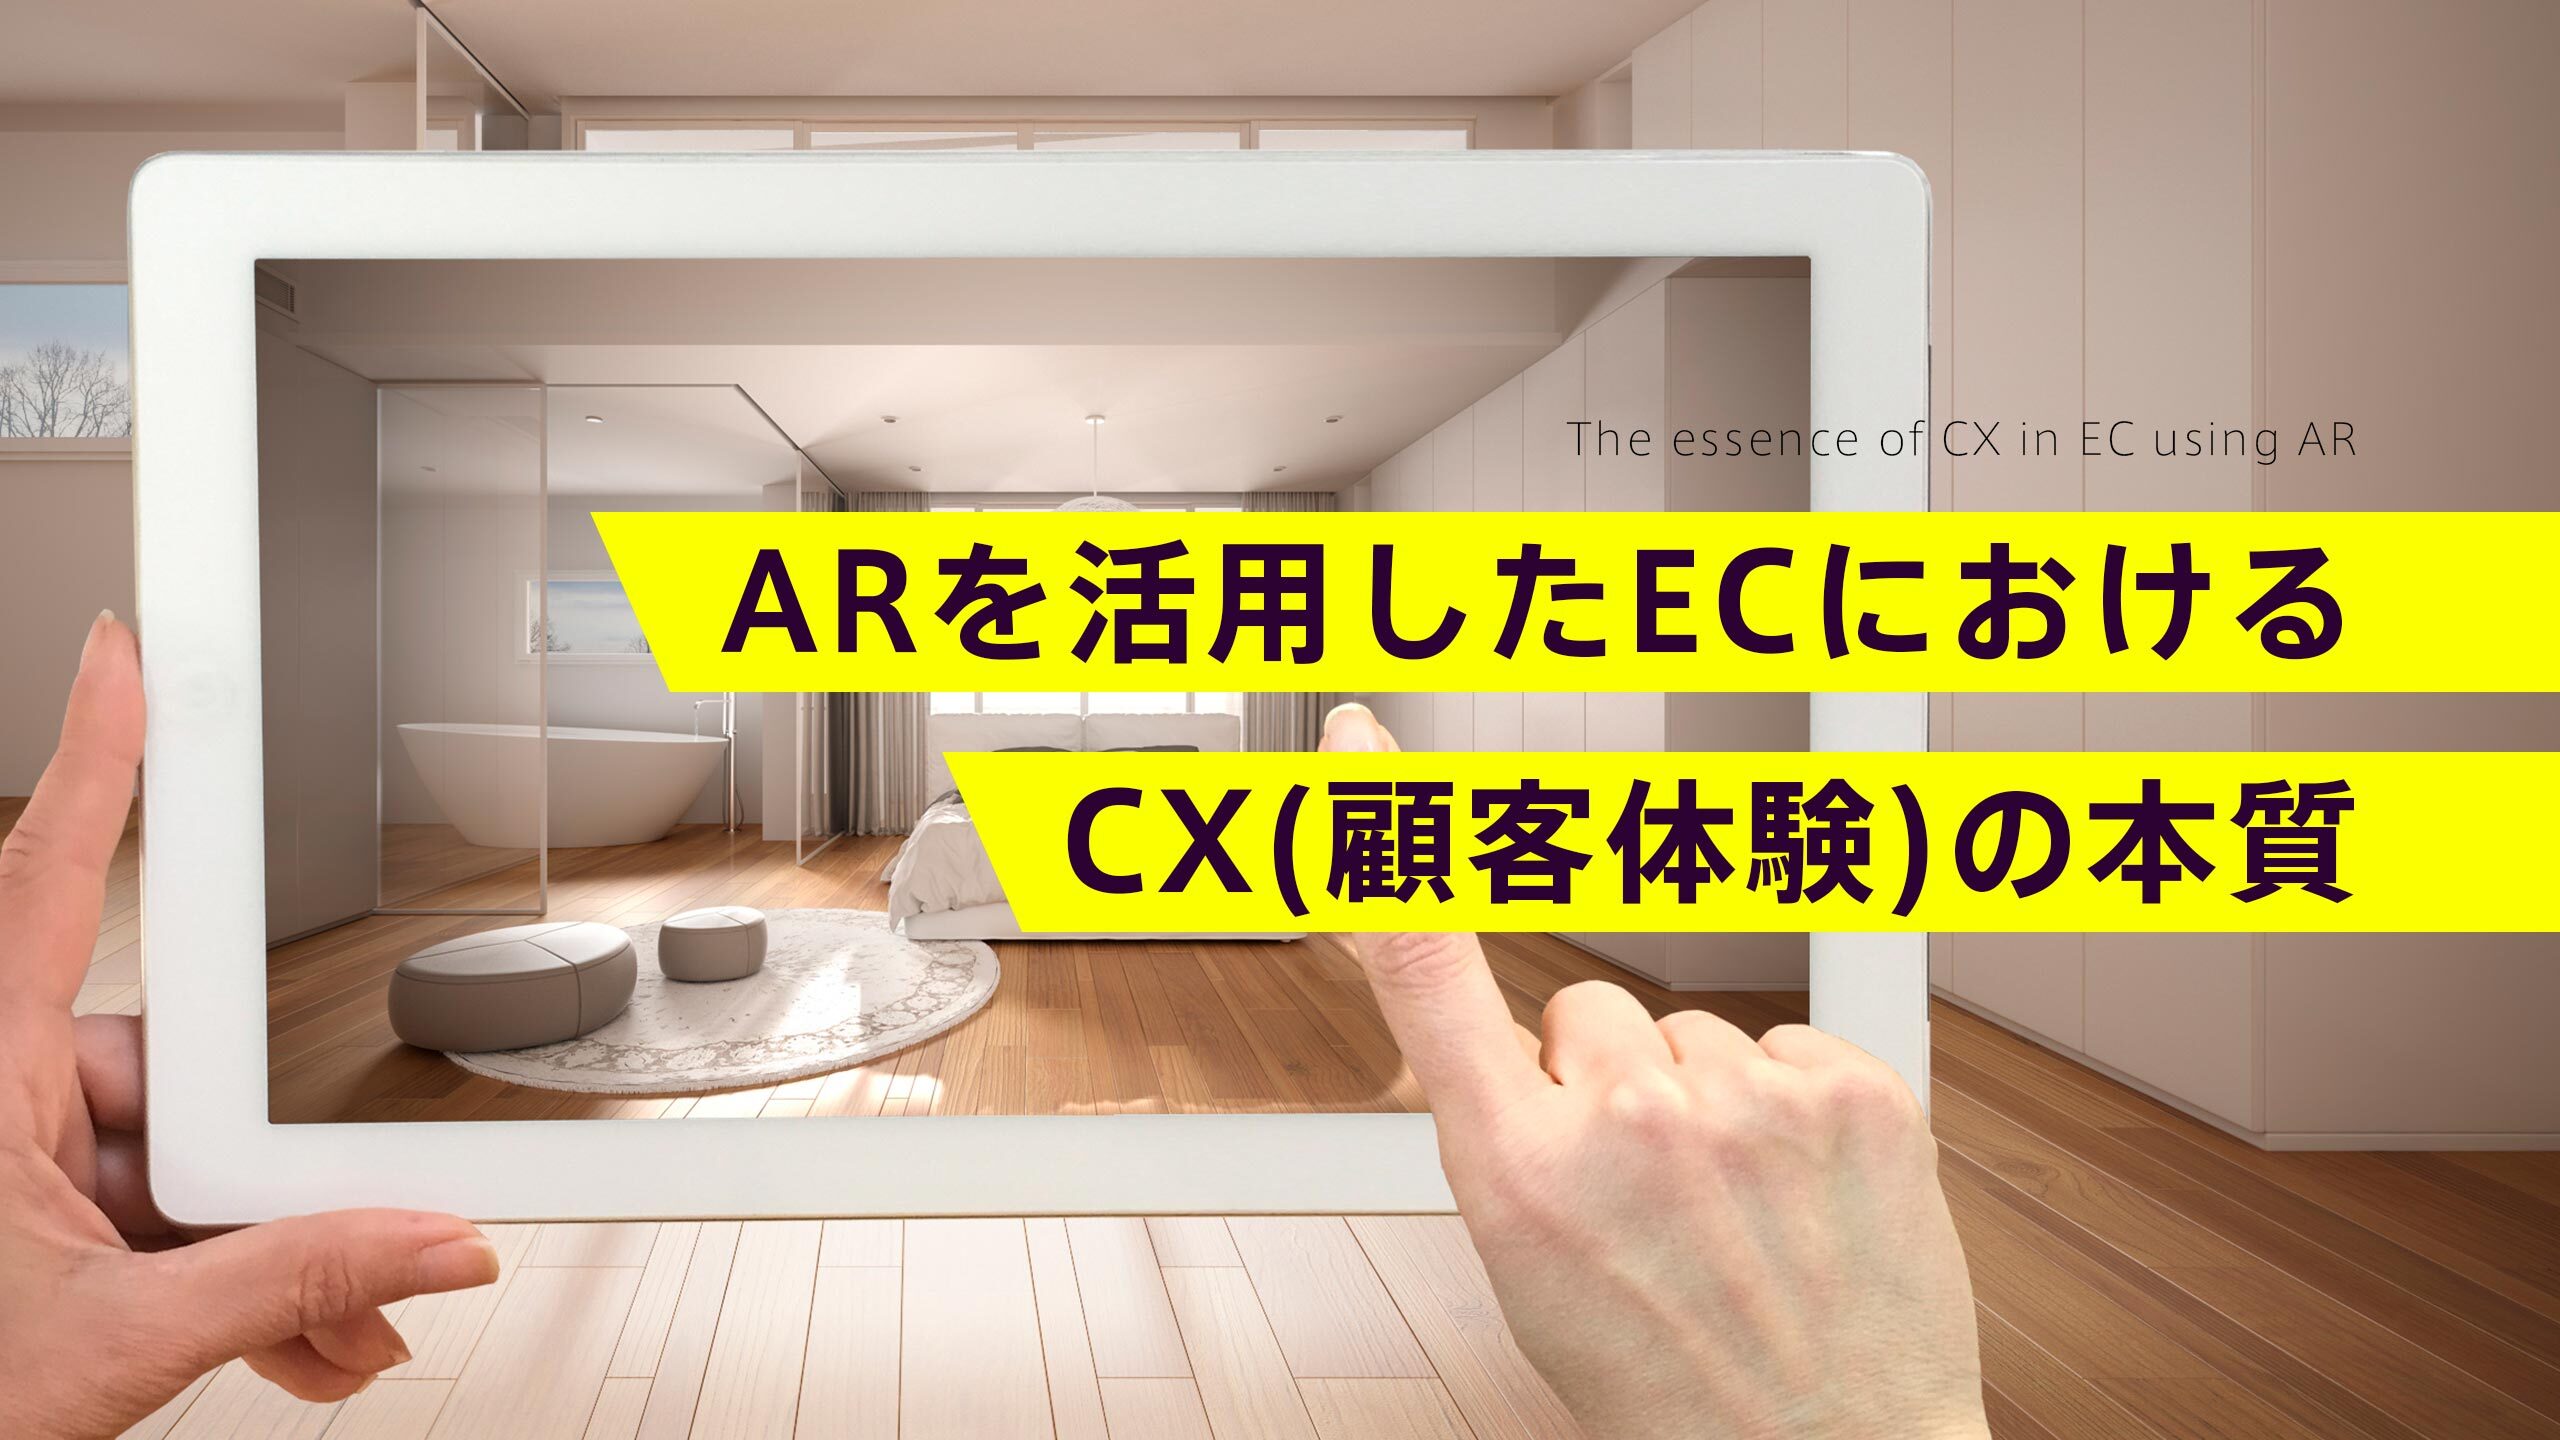 ARを活用したECにおけるCX(顧客体験)の本質